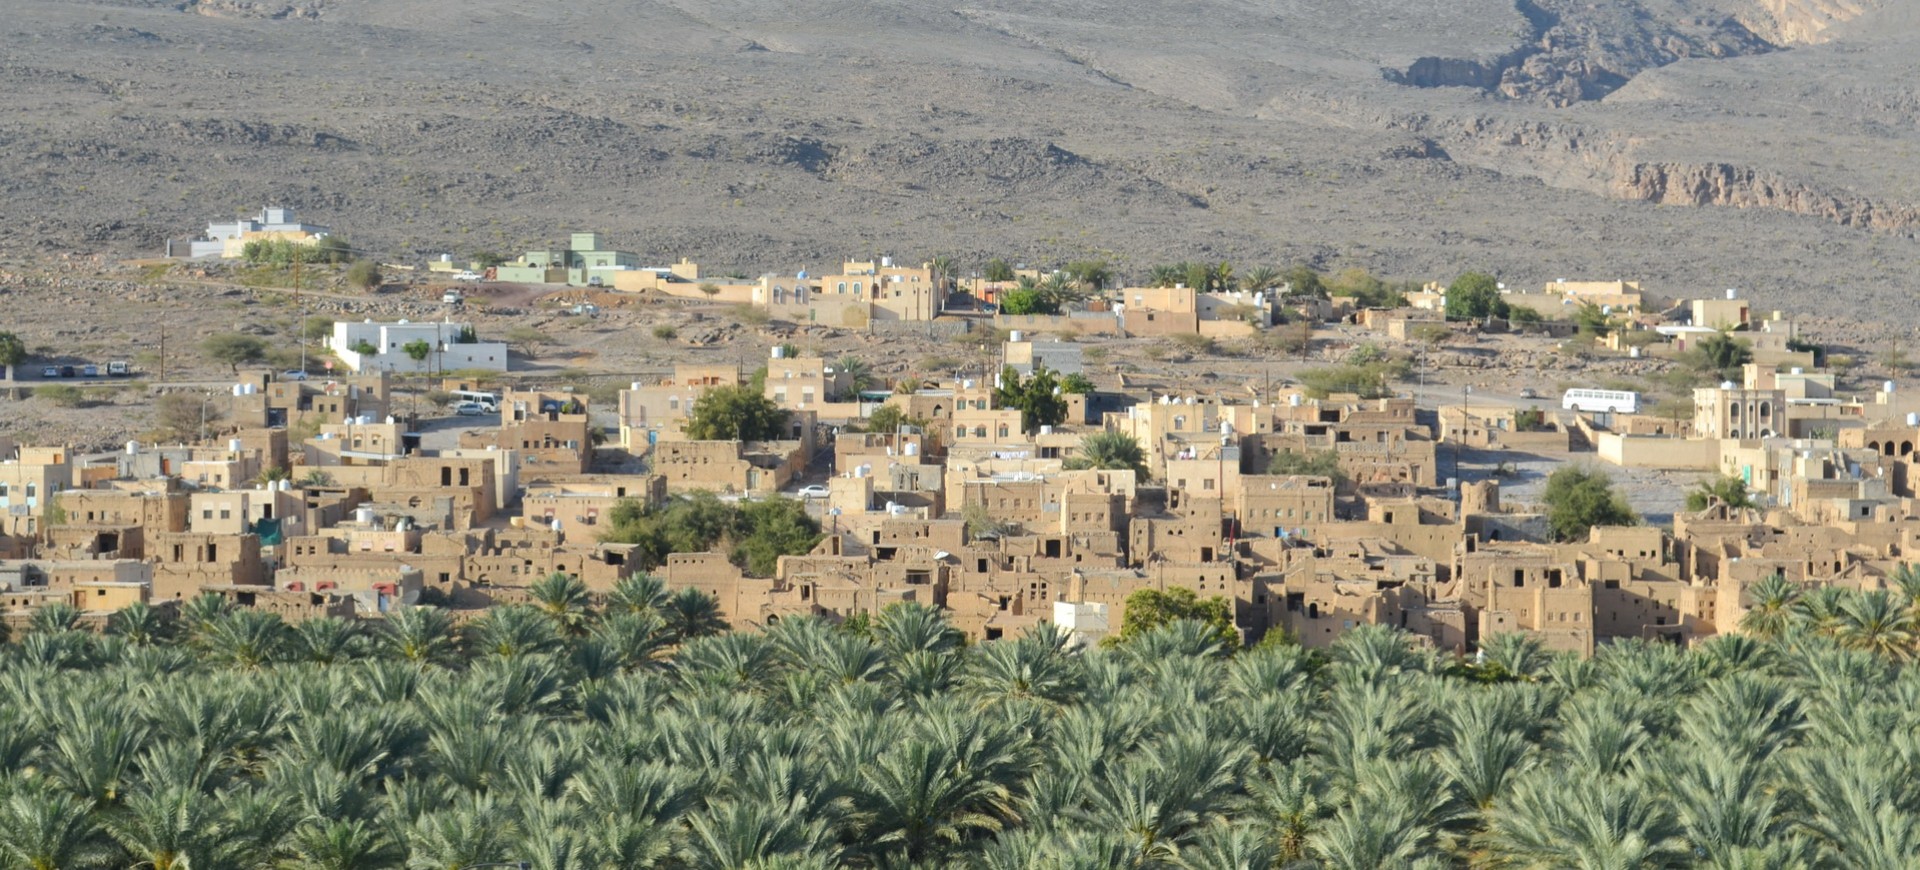 Oman Paysages du Djebel Akhdar